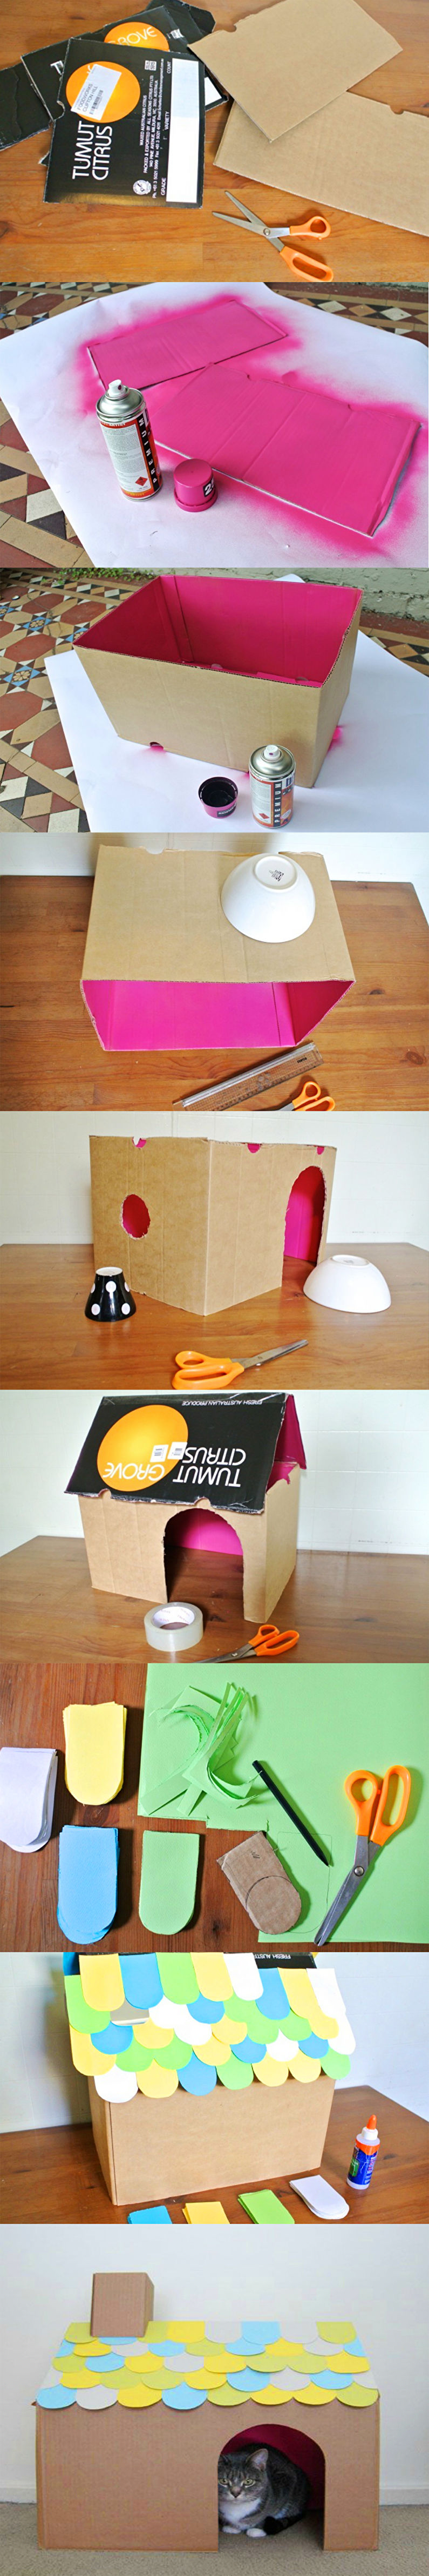 DIY Cat House - Casă simplă din carton